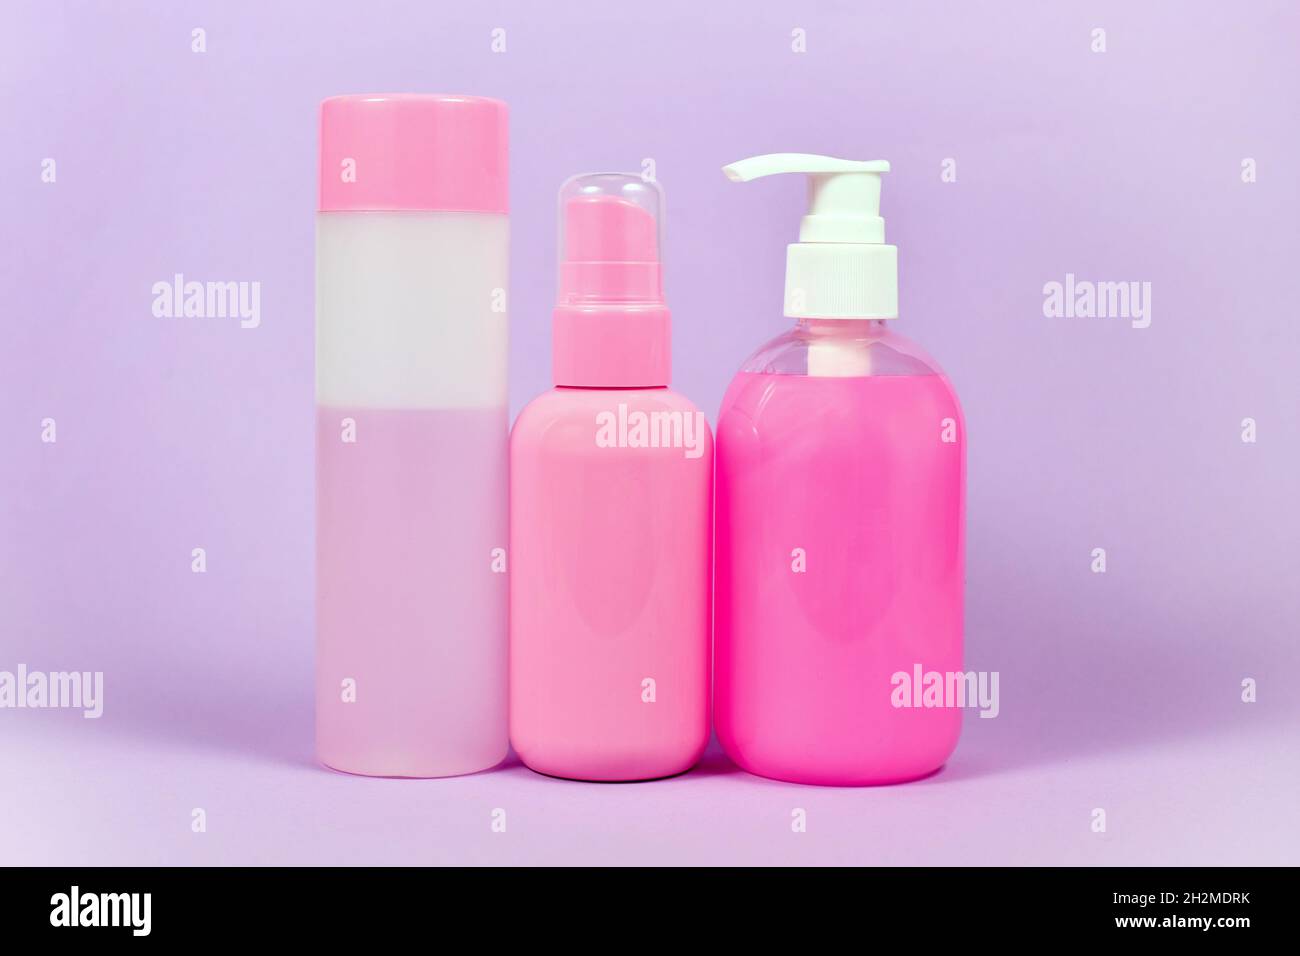 Stéréotype produits d'hygiène de couleur rose commercialisés aux femmes Banque D'Images